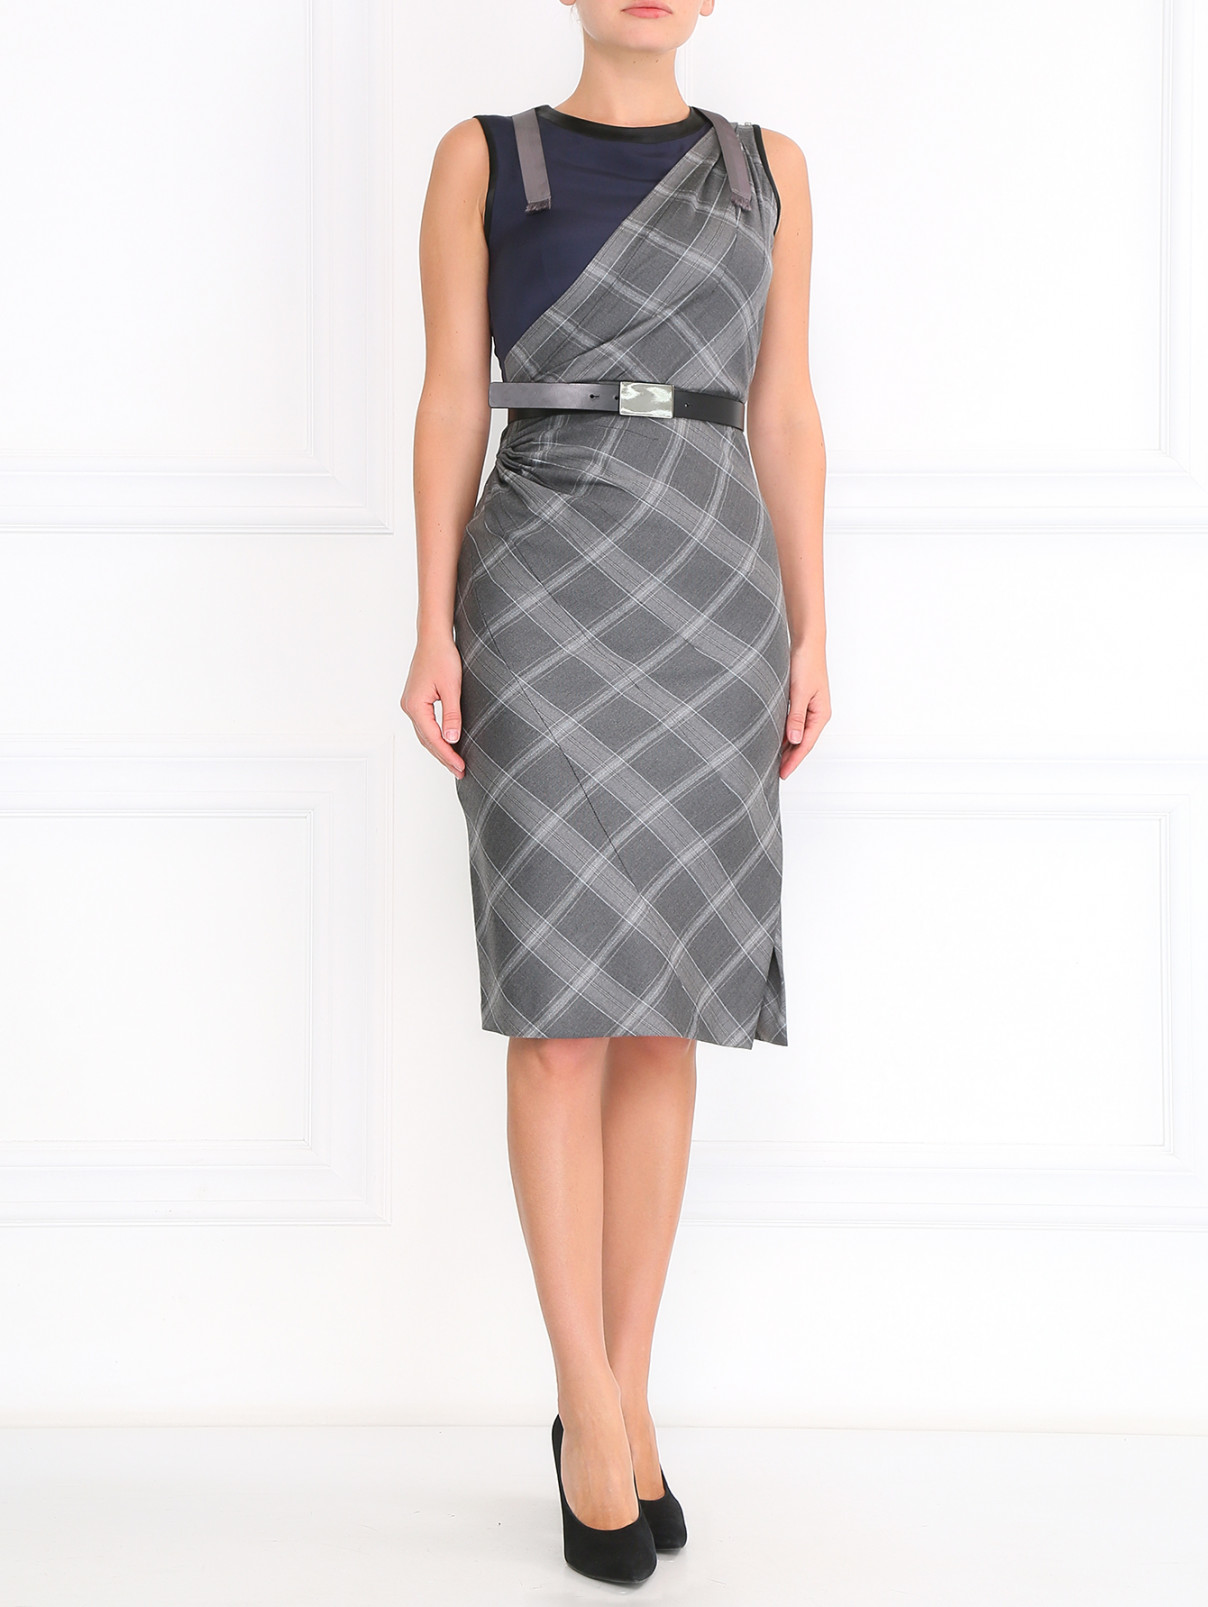 Платье из шерсти с поясом Sportmax  –  Модель Общий вид  – Цвет:  Серый